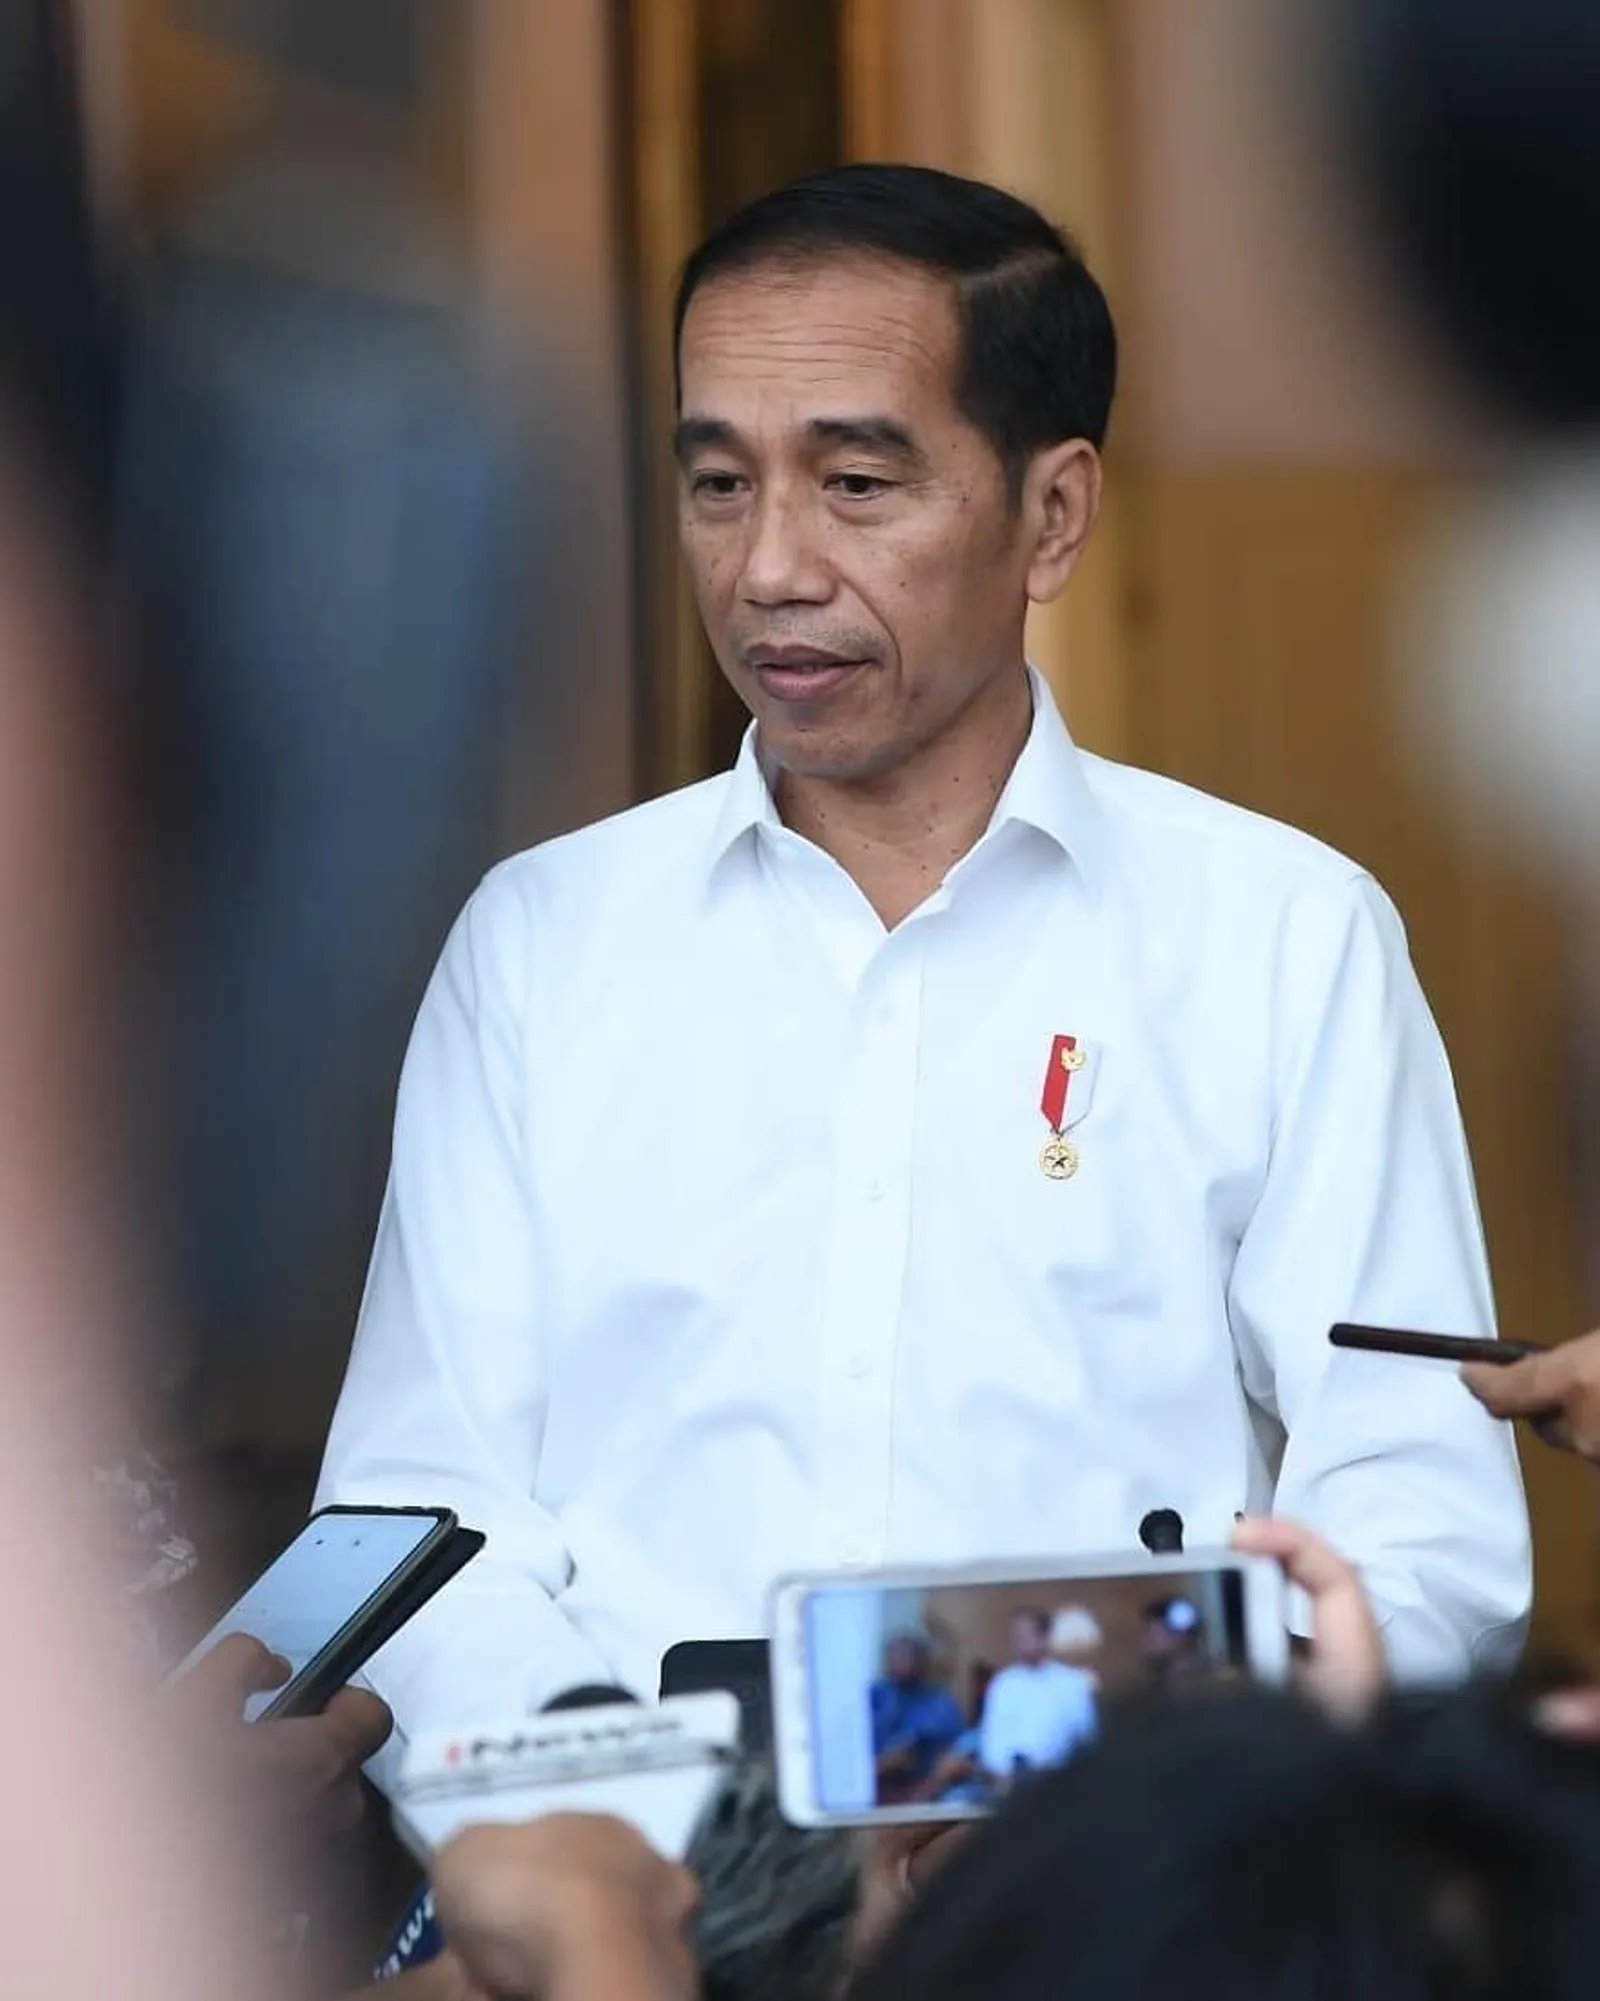 Presiden Jokowi Masuk 50 Besar Muslim Paling Berpengaruh, Ini Faktanya